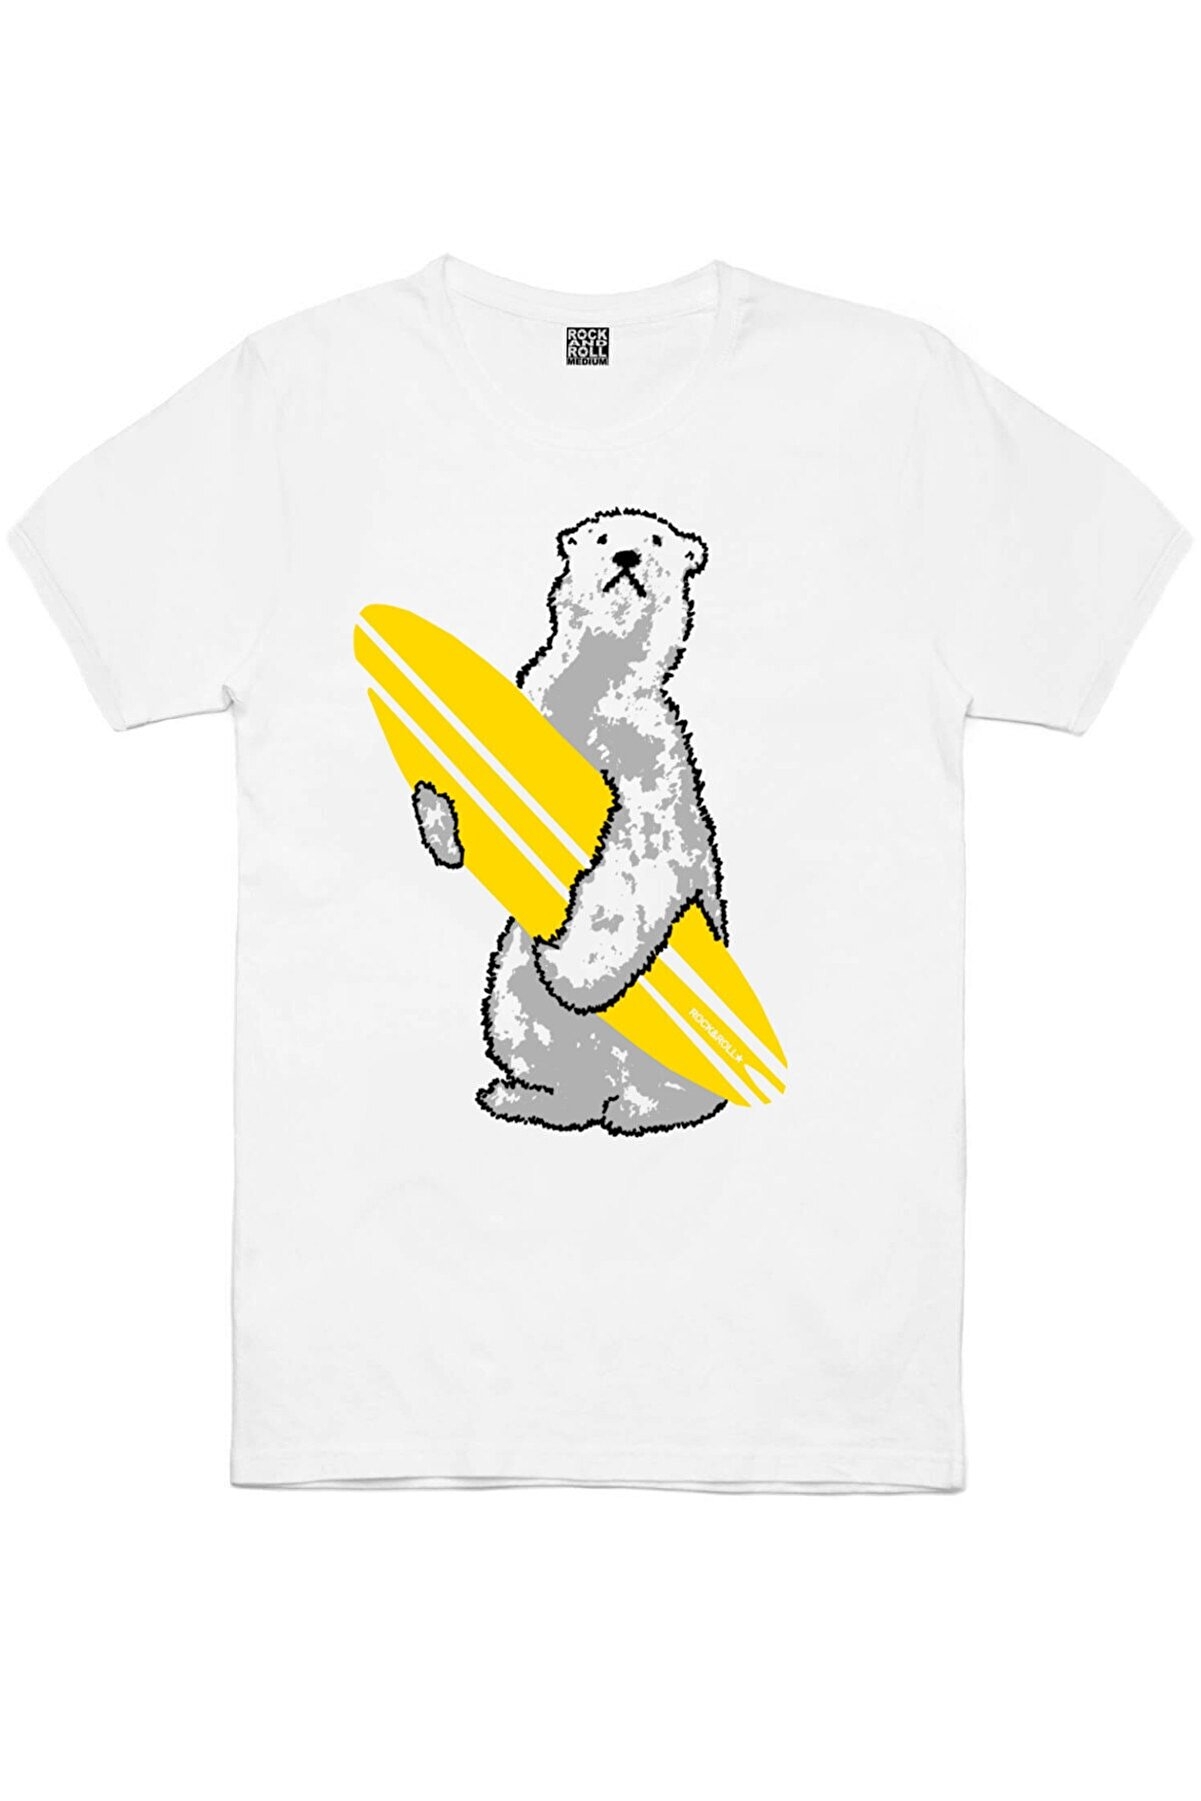 Bebe Yoda, Kutup Sörfü Erkek 2'li Eko Paket T-shirt